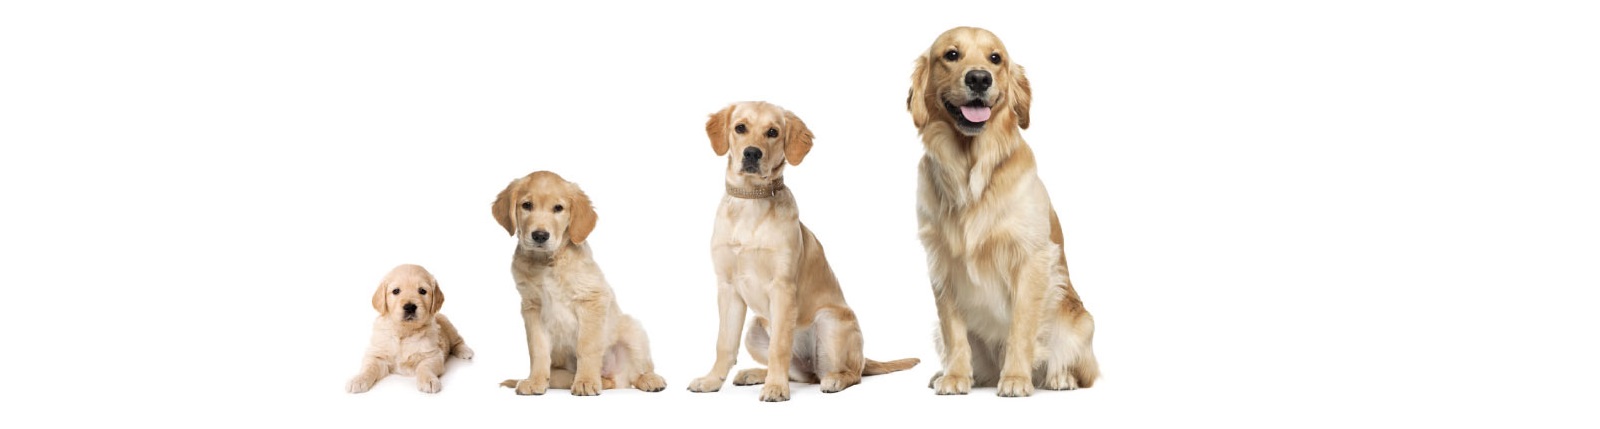 Peso Golden Retriever: tabella per adulto e cucciolo